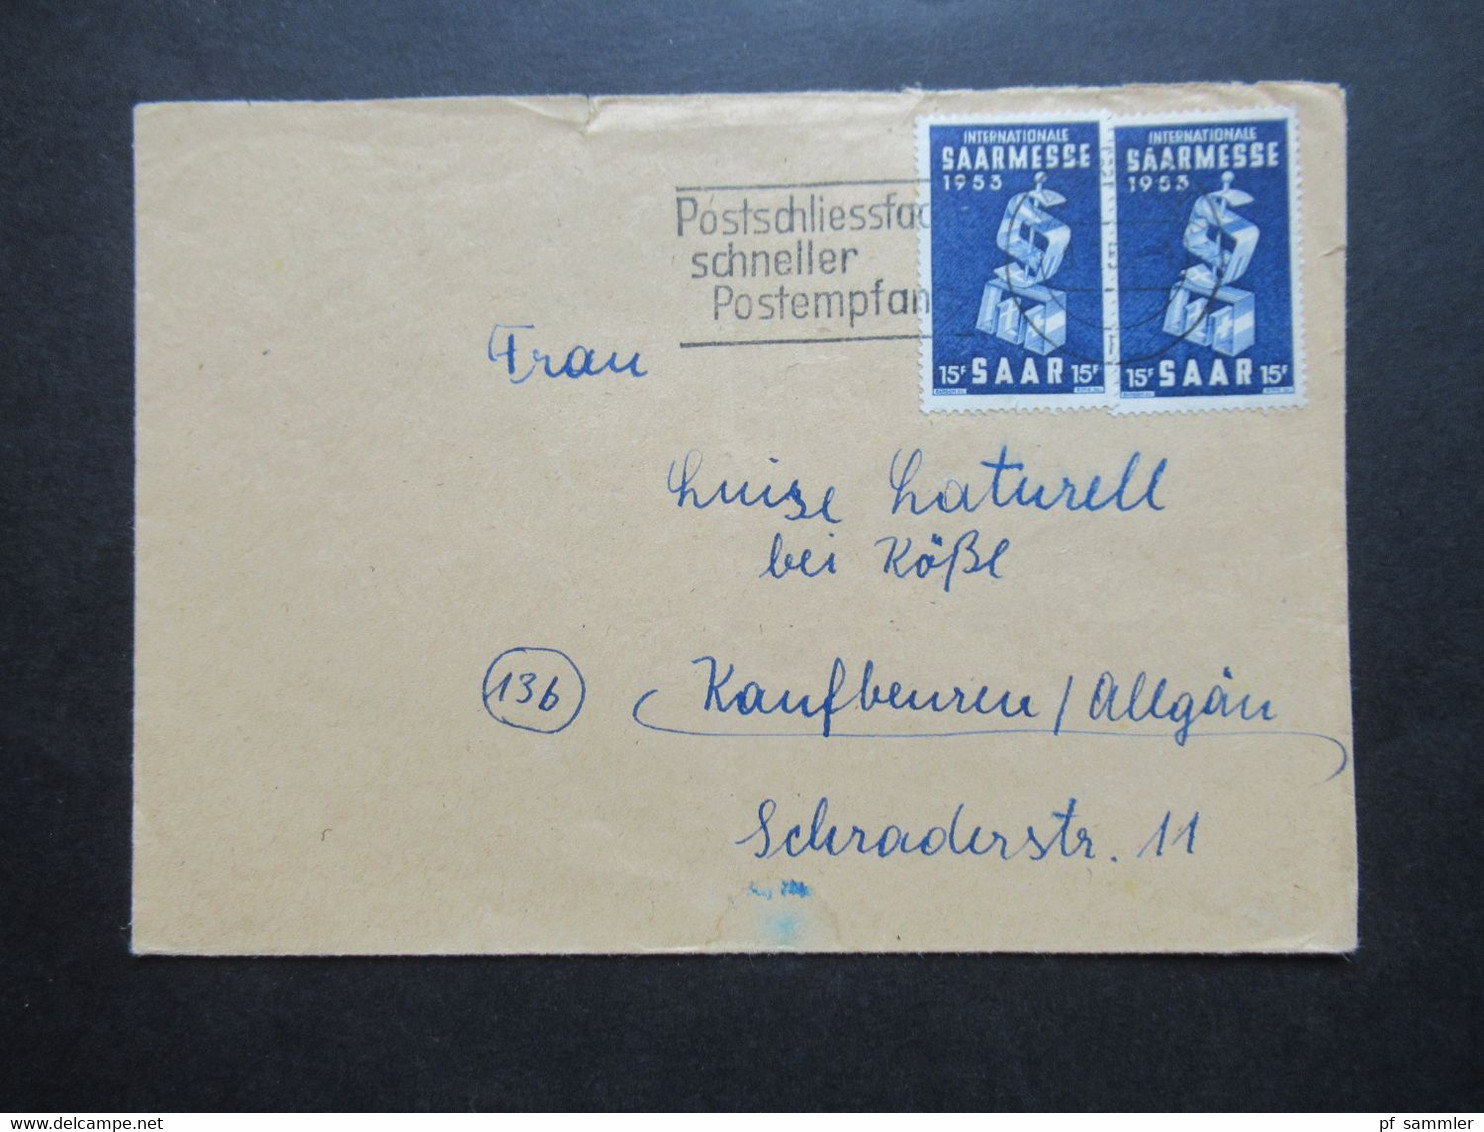 Saarland 1953 Nr.341 (2) MeF Internationale Saarmesse Werbestempel Postschliessfach Schneller Postempfang - Storia Postale